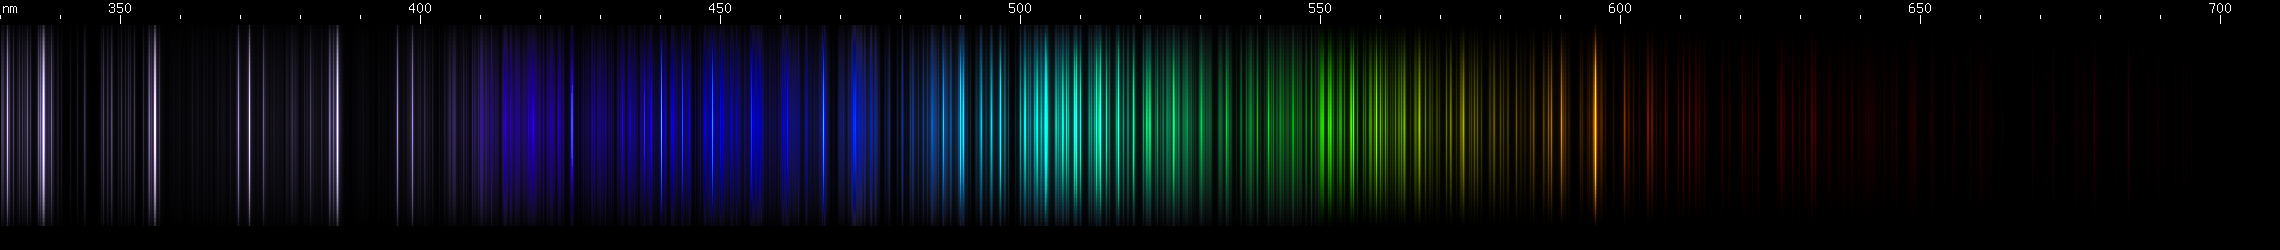 Spectral lines of Erbium.